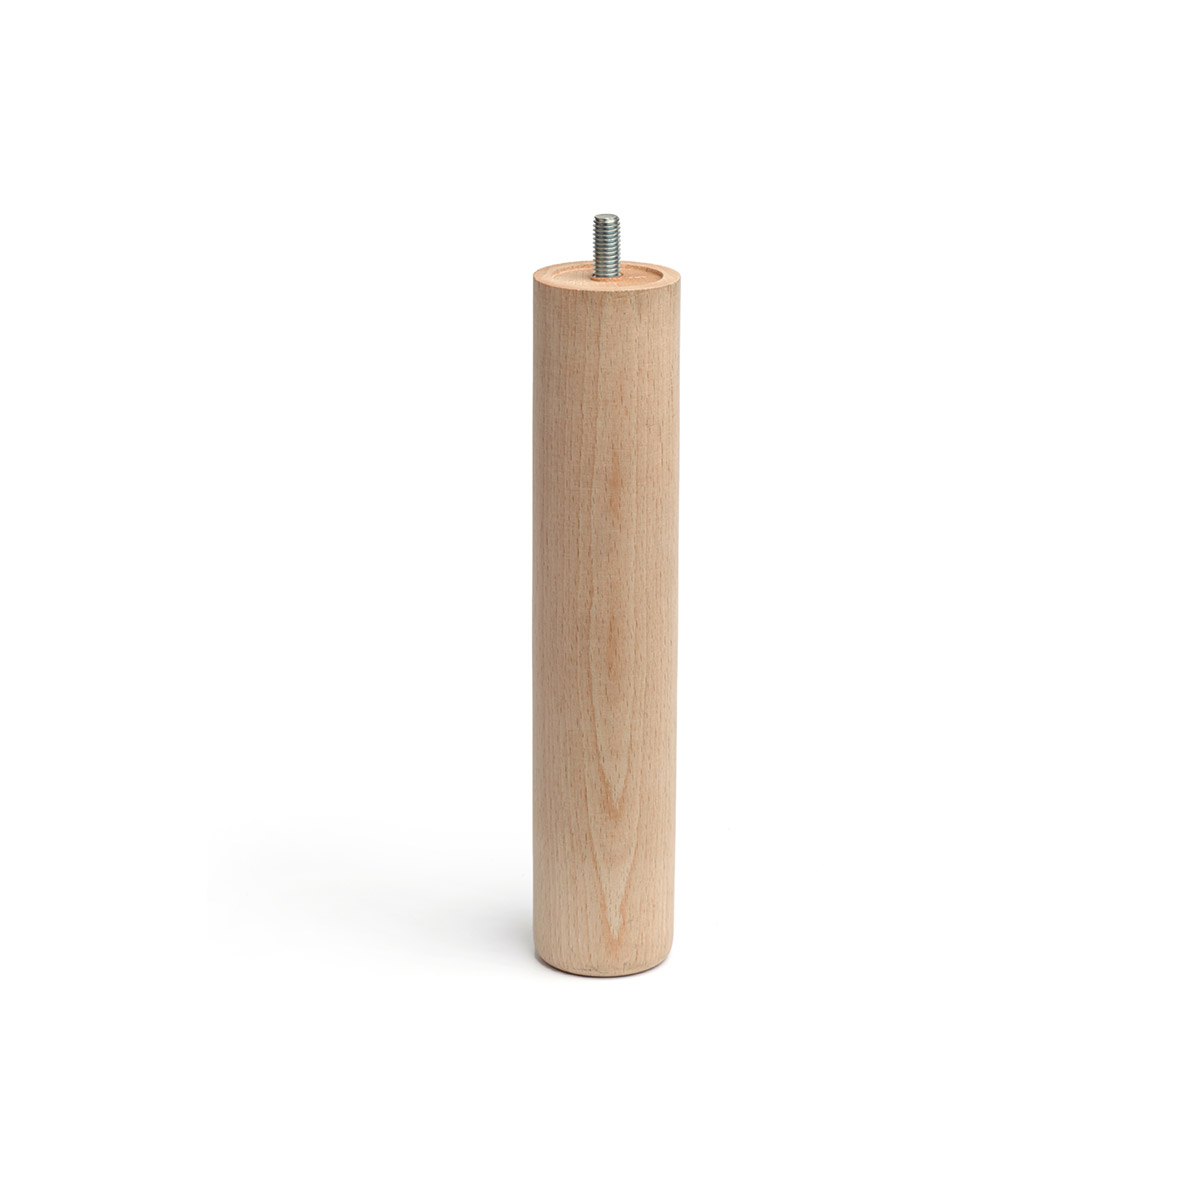 Pied cylindrique en bois d'une hauteur de 250 mm et finition hêtre brut. Dimensions: 50x50x250 mm